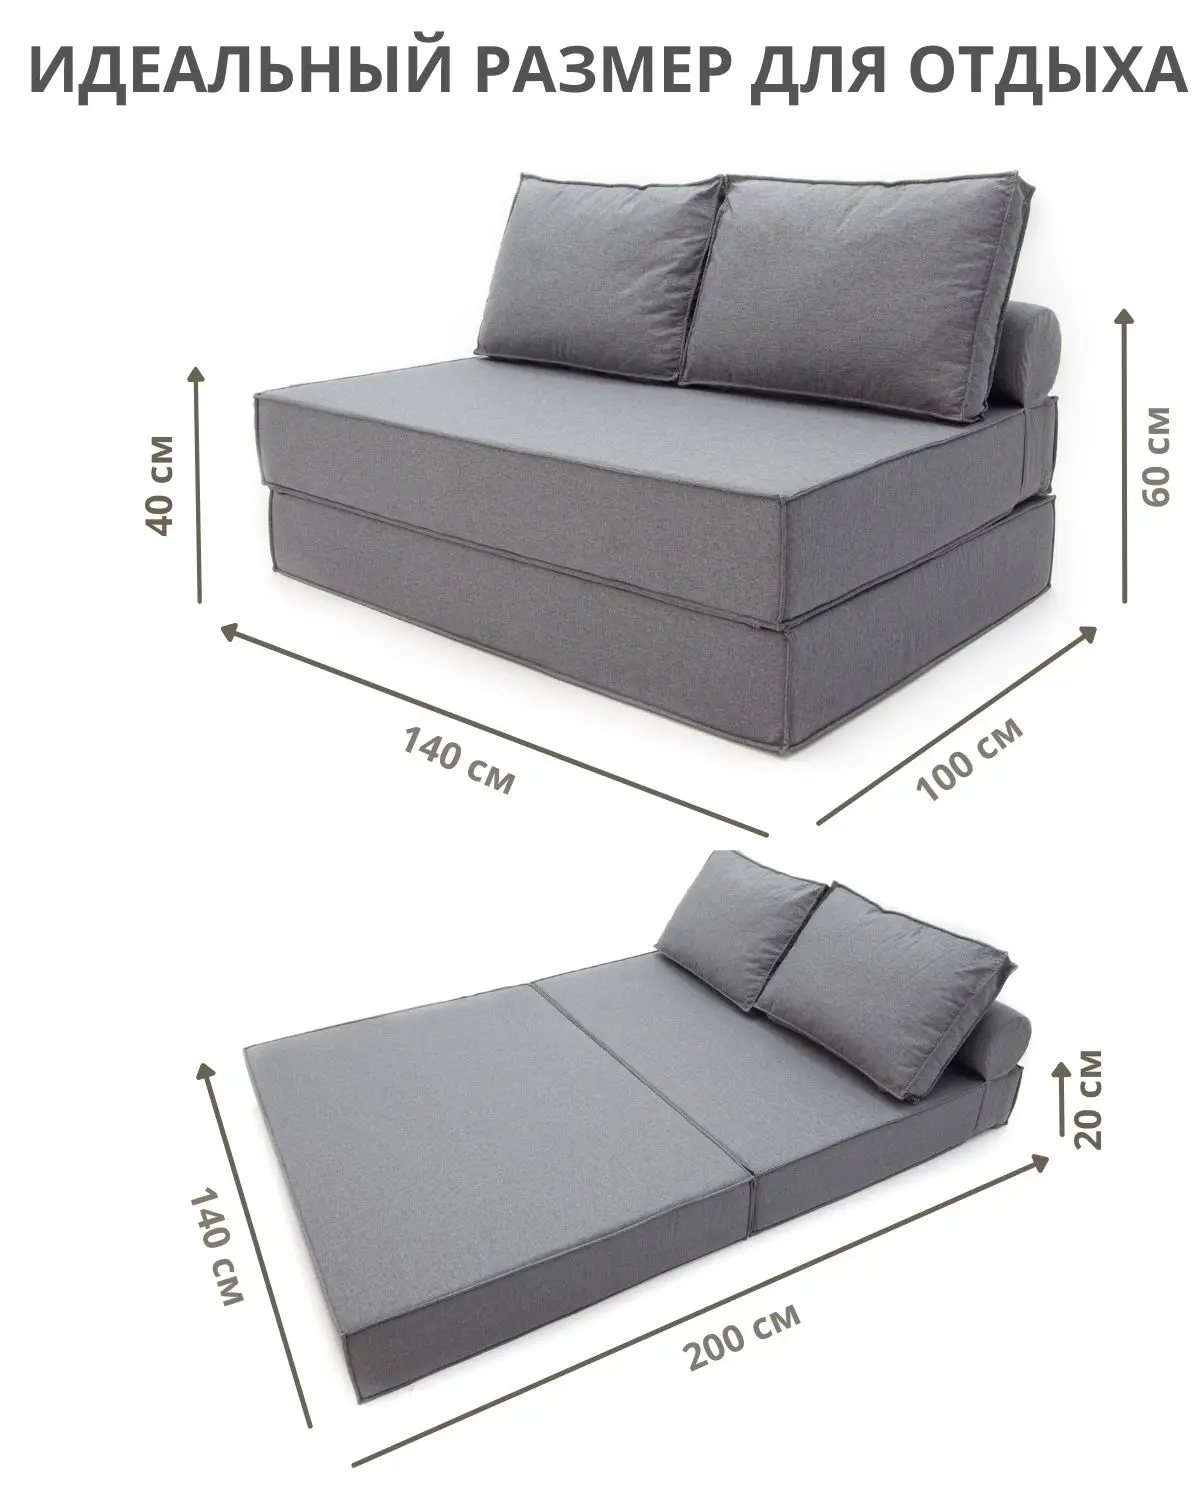 Диван раскладной диван раскладушка диван кровать диван для гостинойбескаркасный диван трансформер мягкая мебель кровать Coolbag